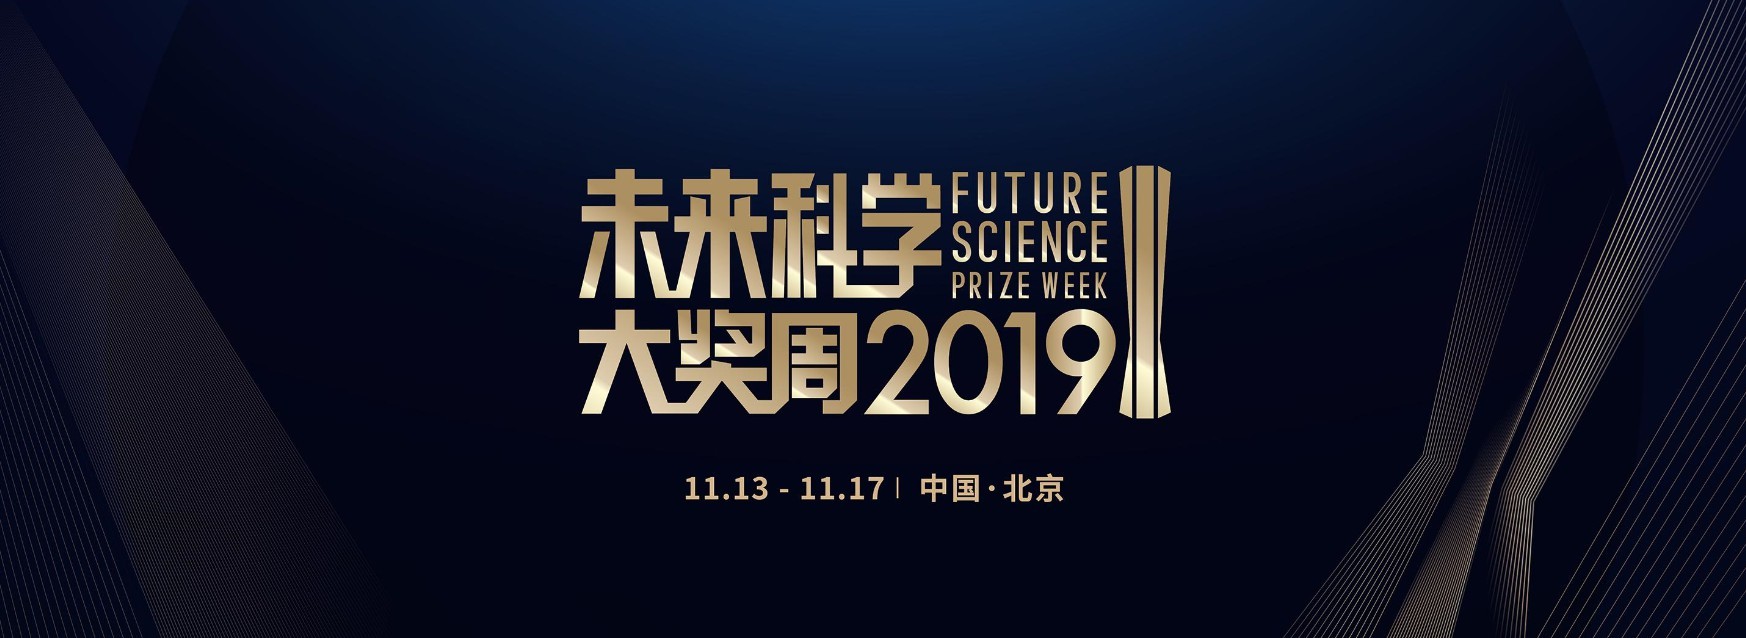 2019未来科学大奖周